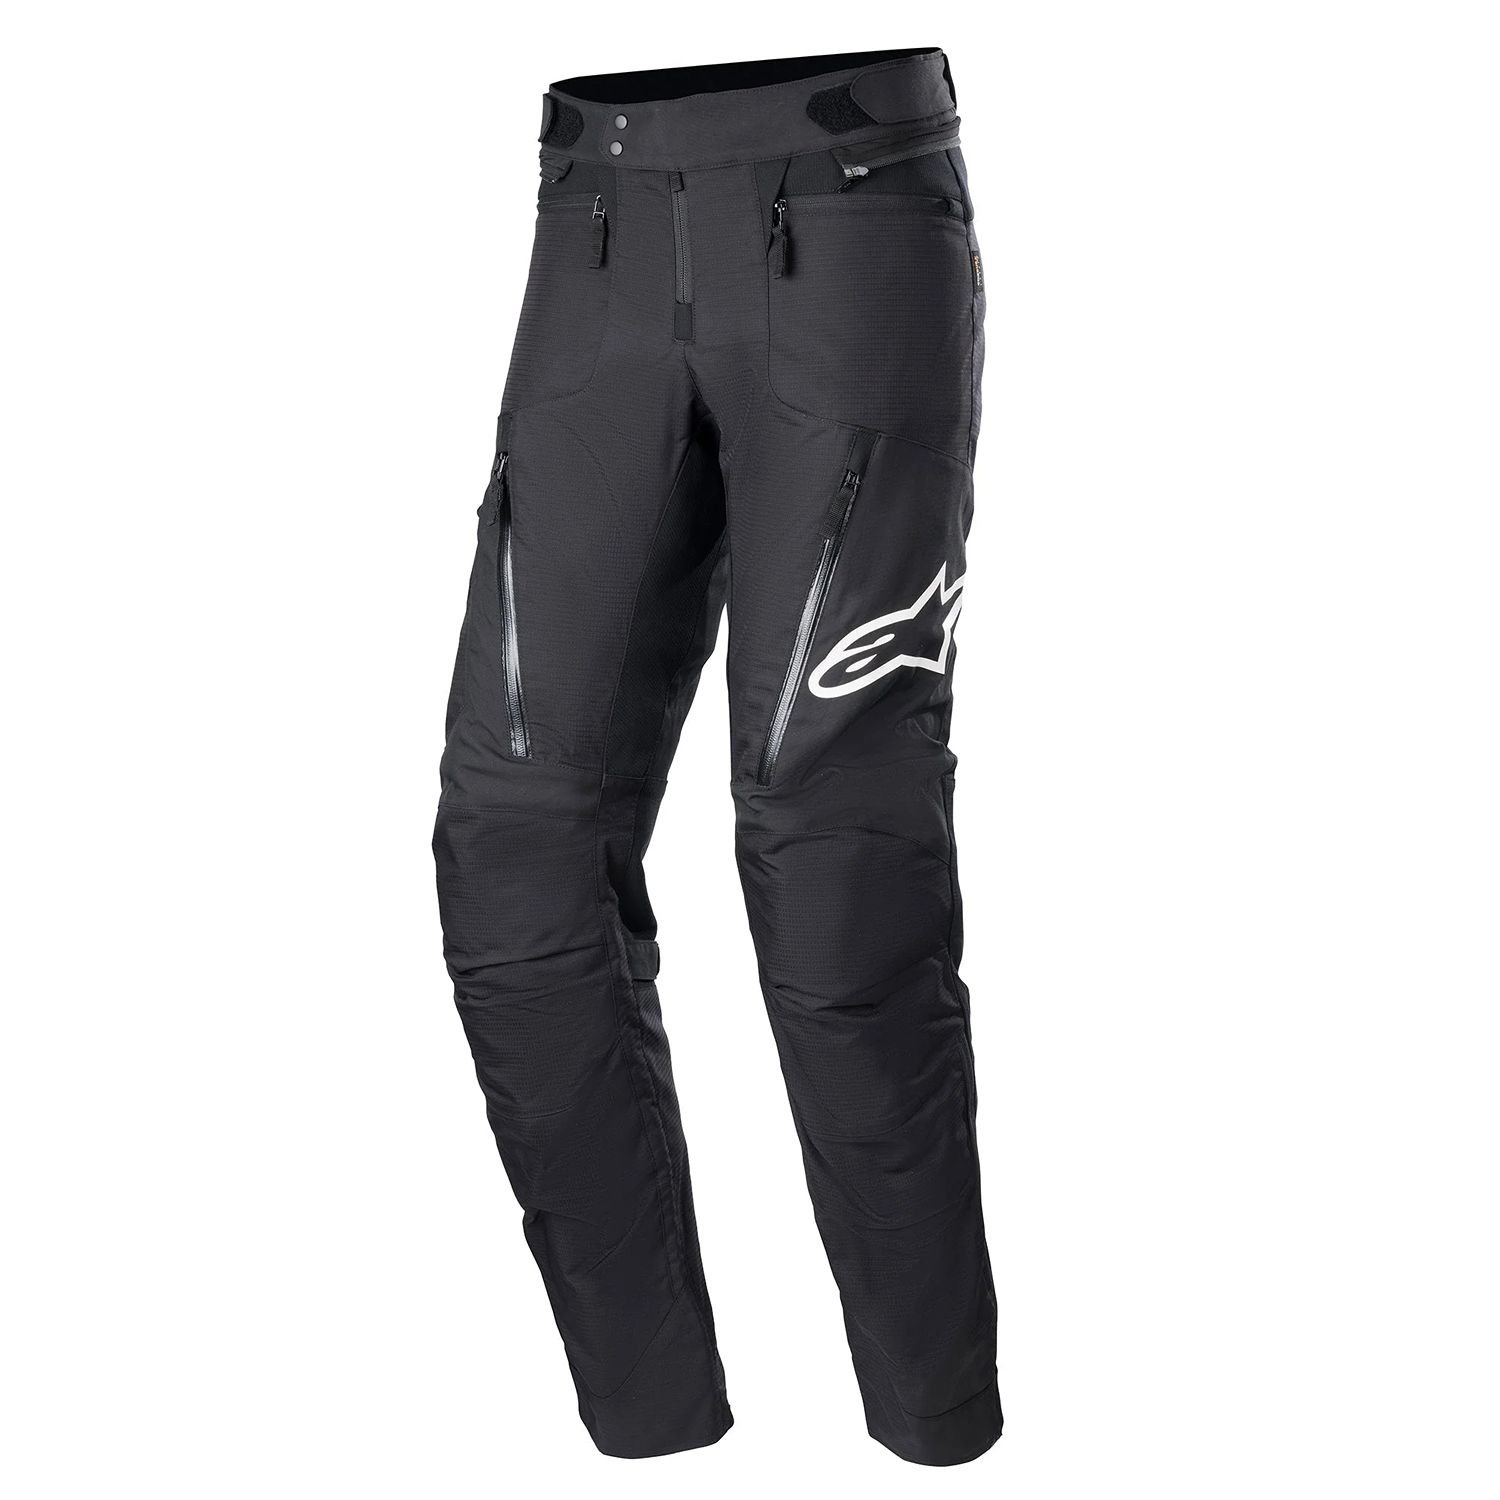 Image of Alpinestars Rx-3 Waterproof Pants Black Size 2XL EN